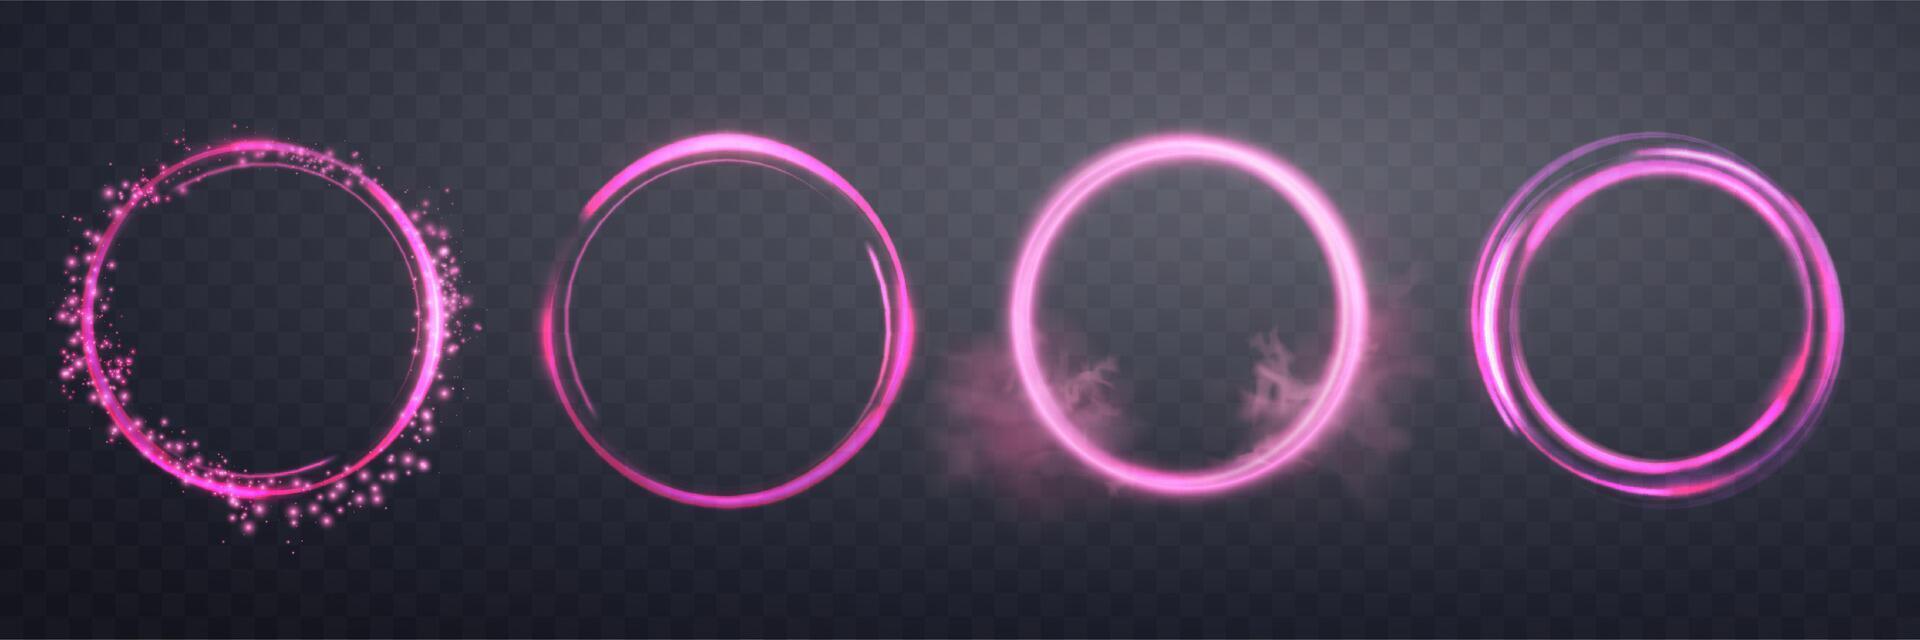 lysande rosa magi ringar. neon realistisk energi blossa halo ringar. abstrakt ljus effekt på en mörk bakgrund. vektor illustration.